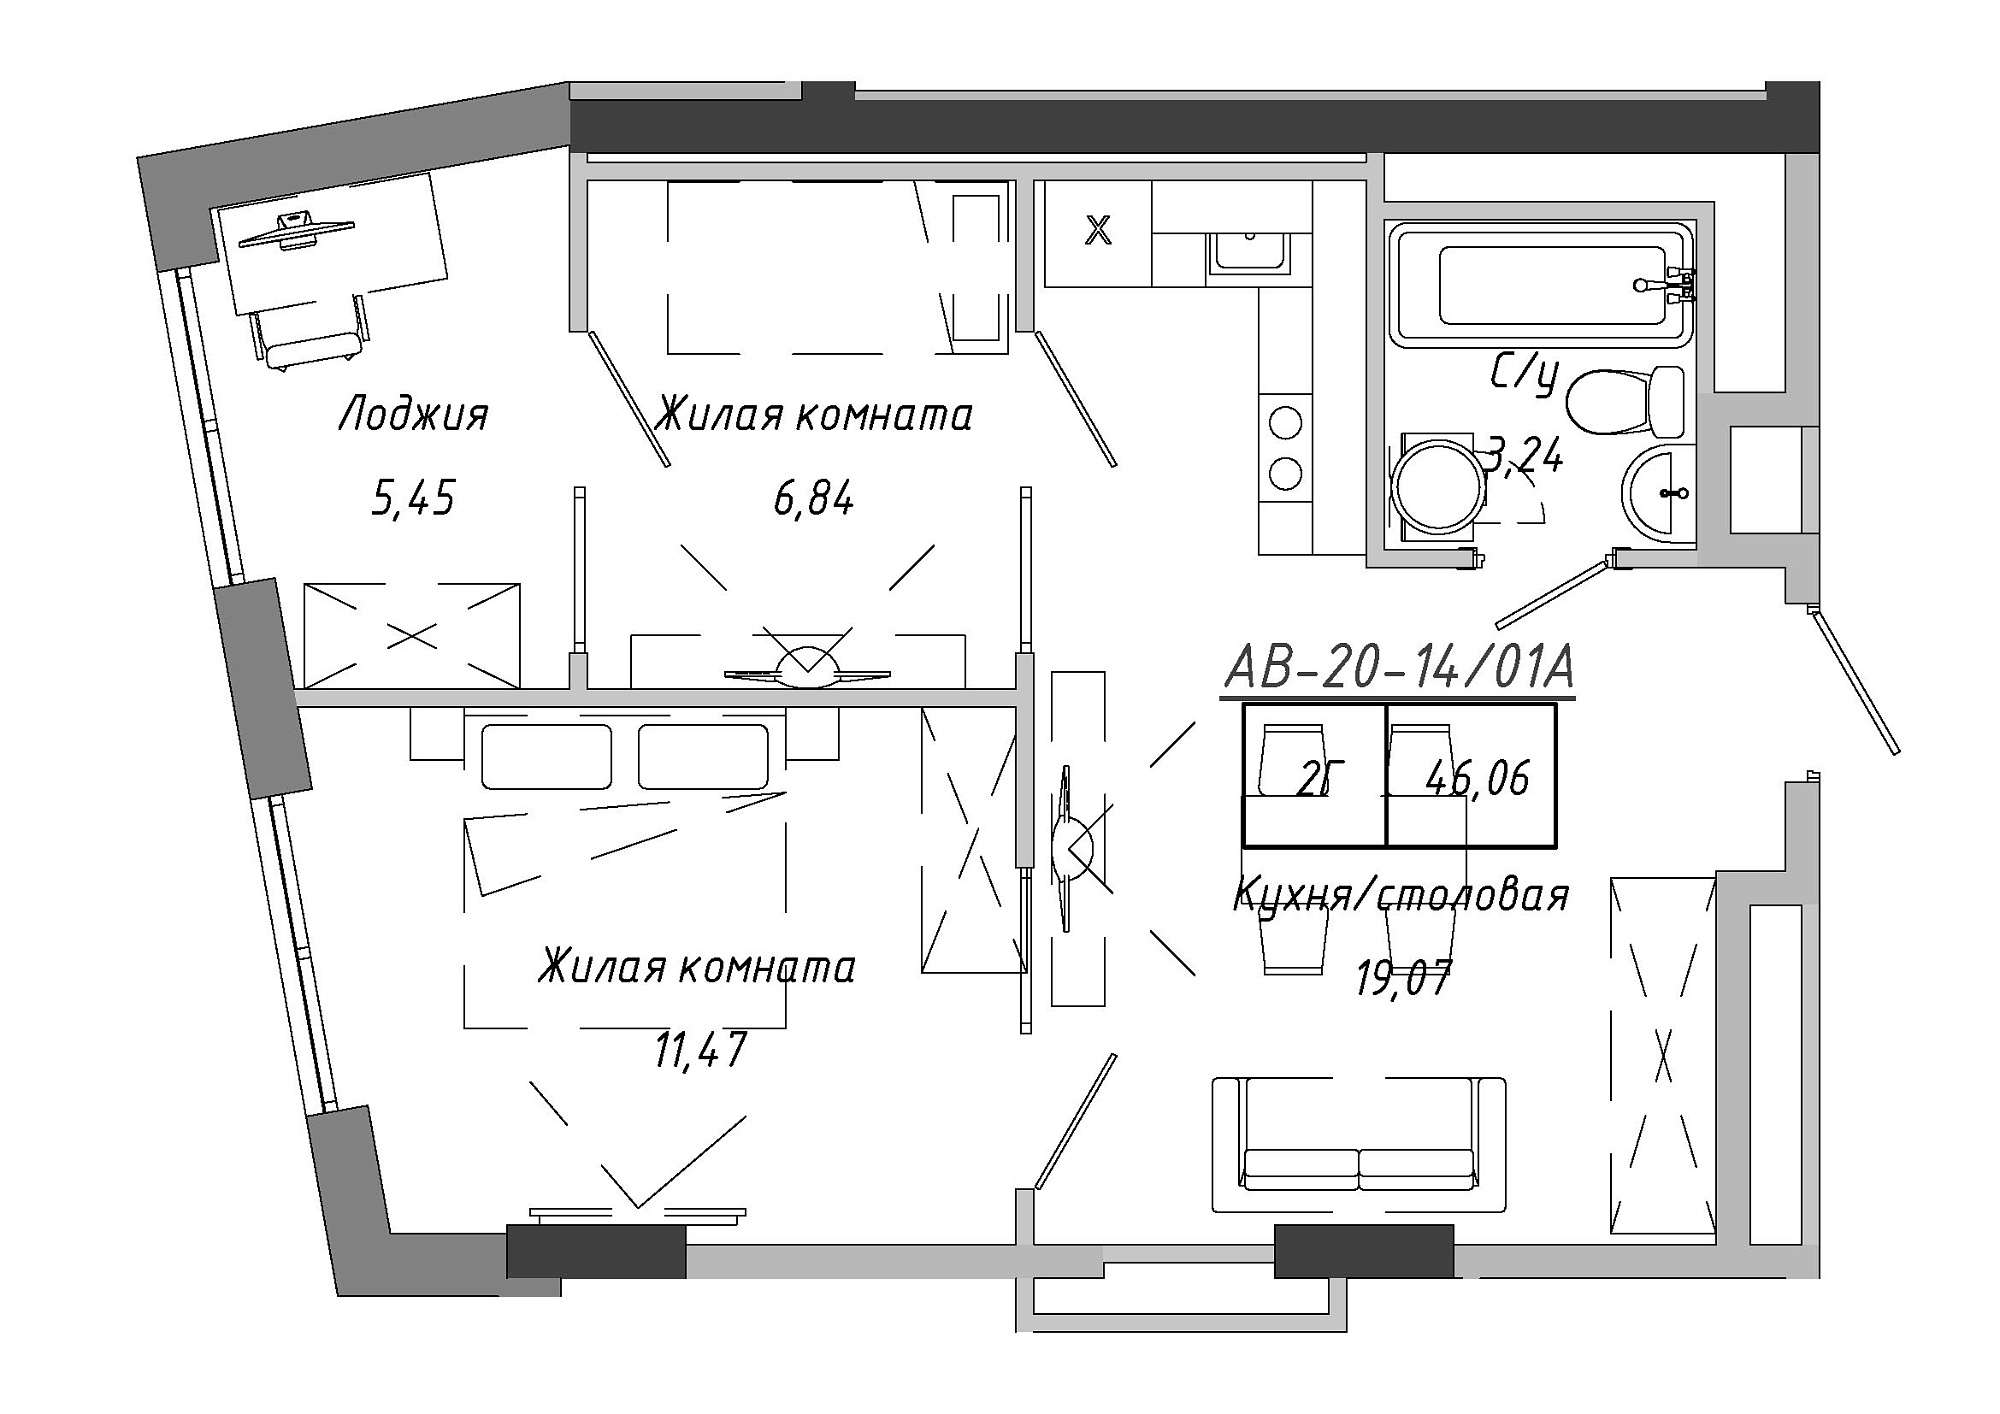 Планування 2-к квартира площею 46.06м2, AB-20-14/0101a.